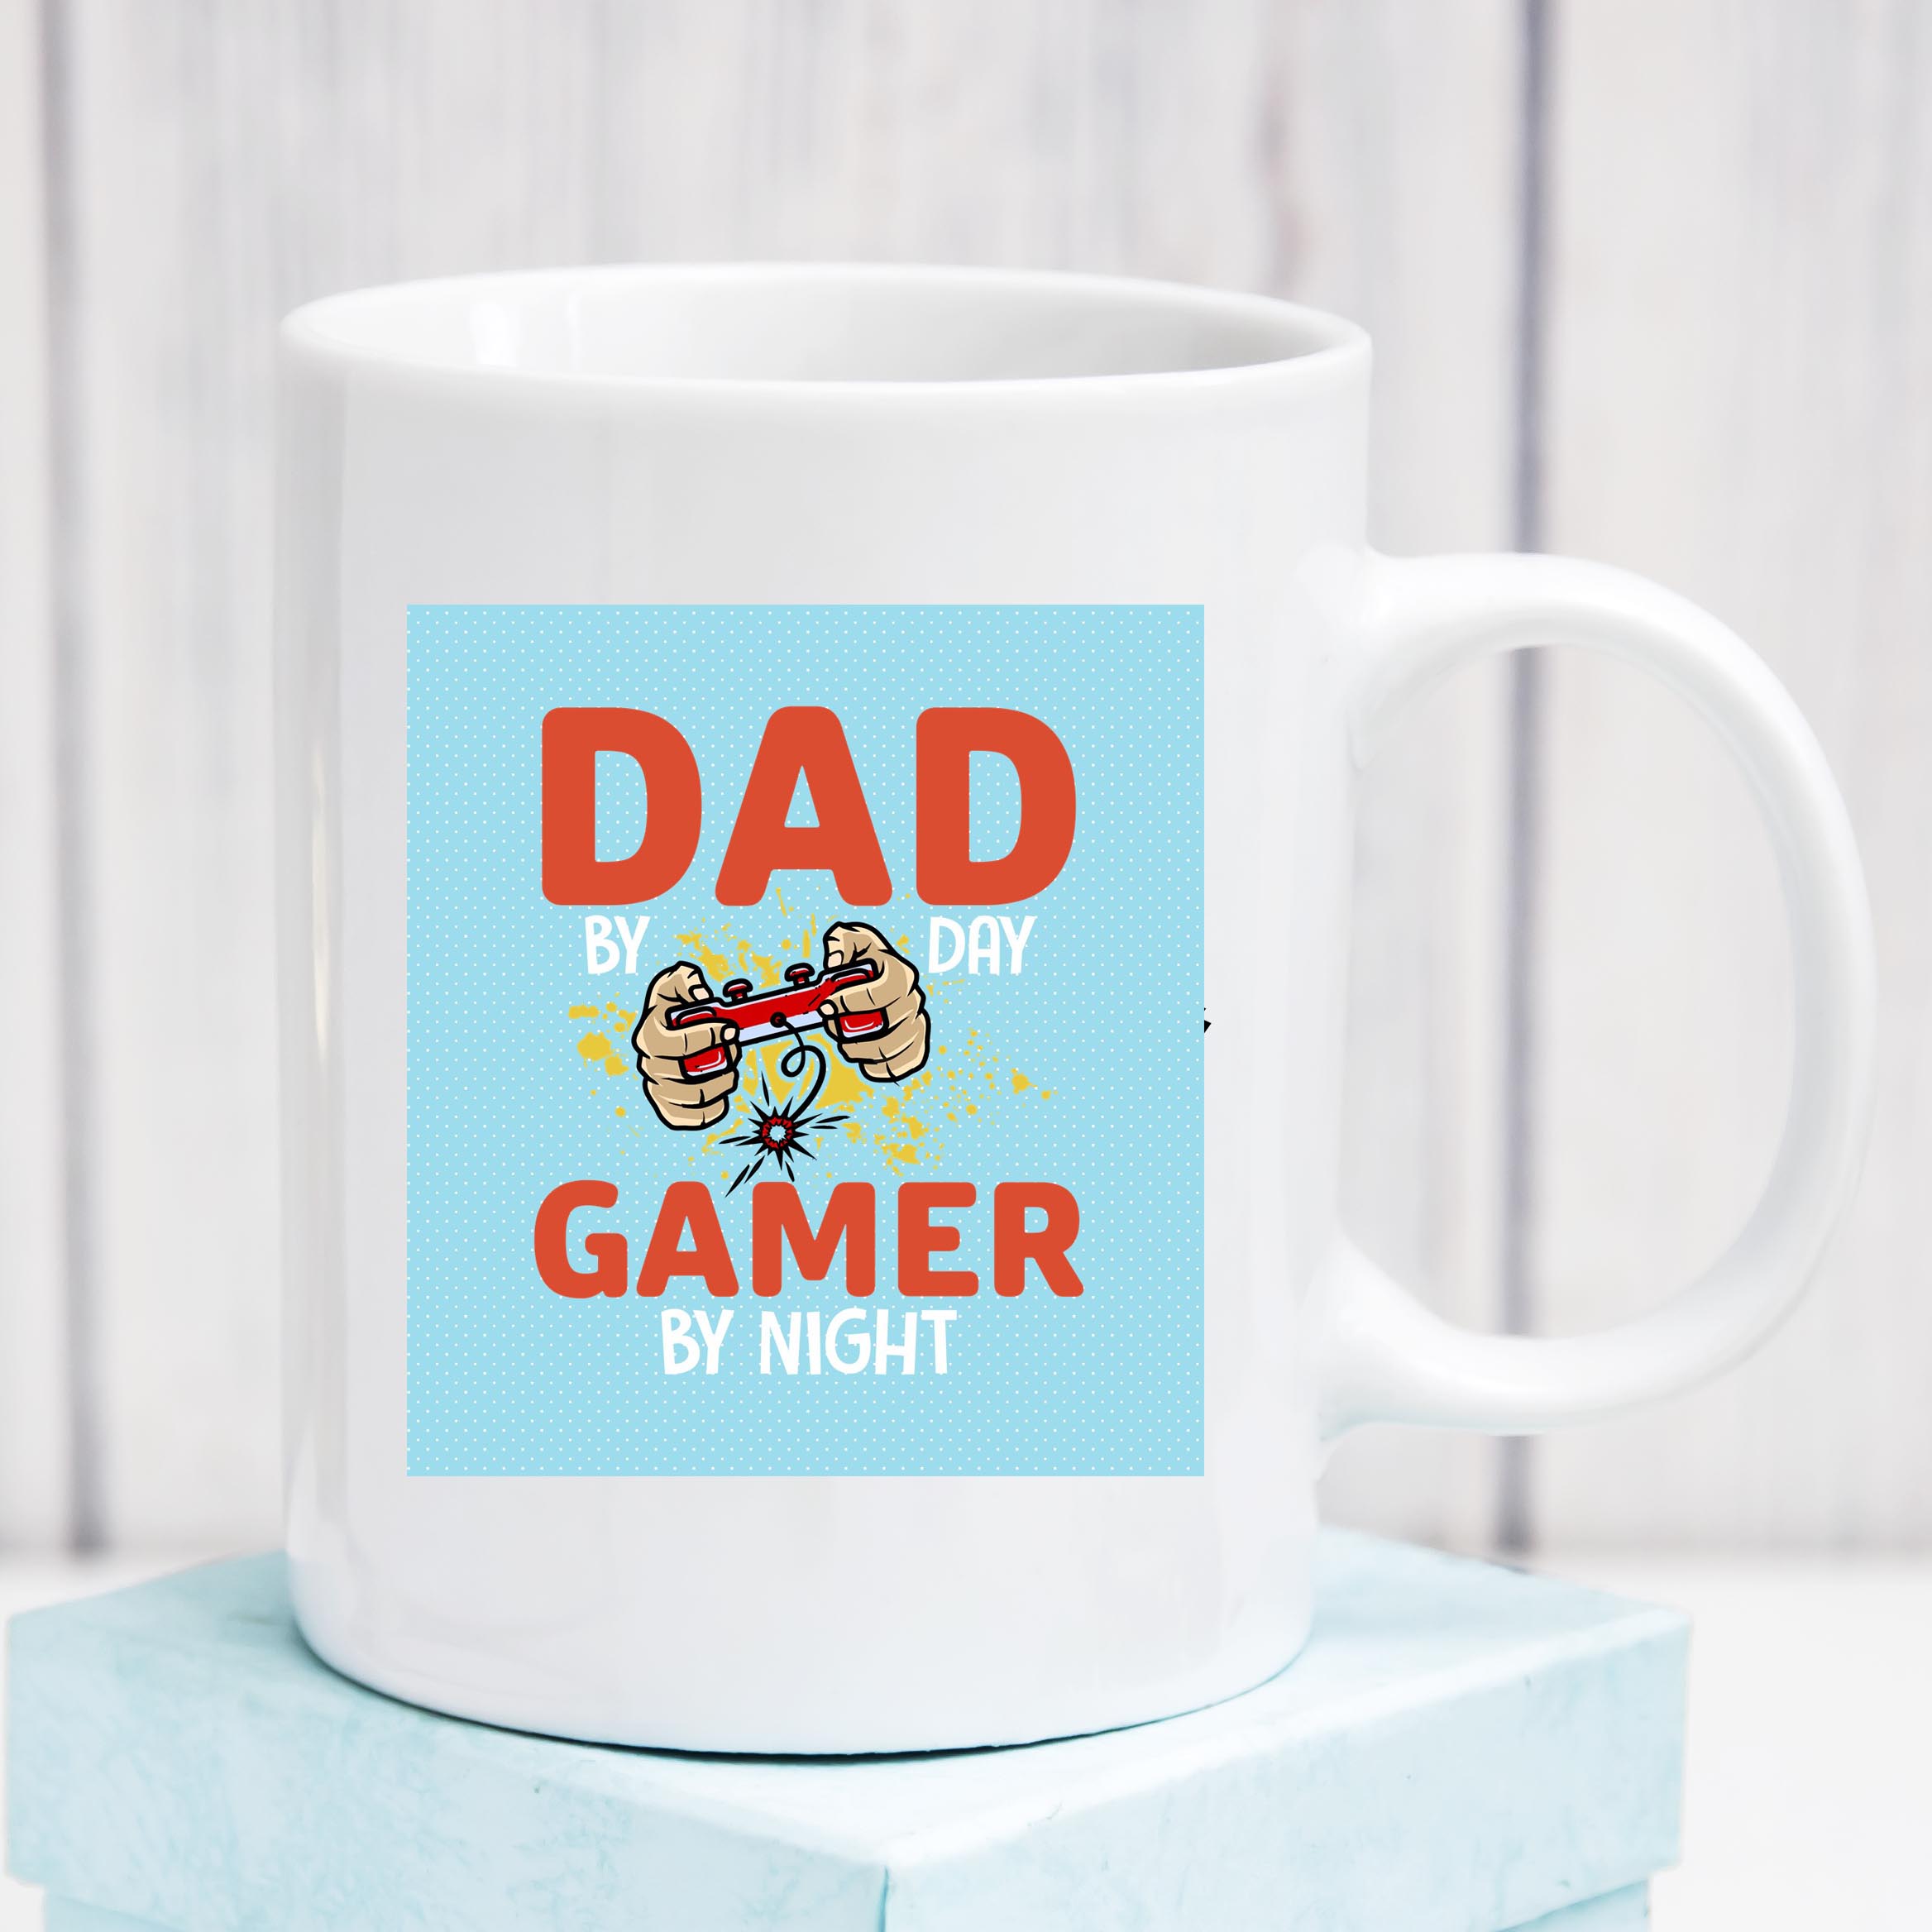 Dad by day, Gamer by night Mug